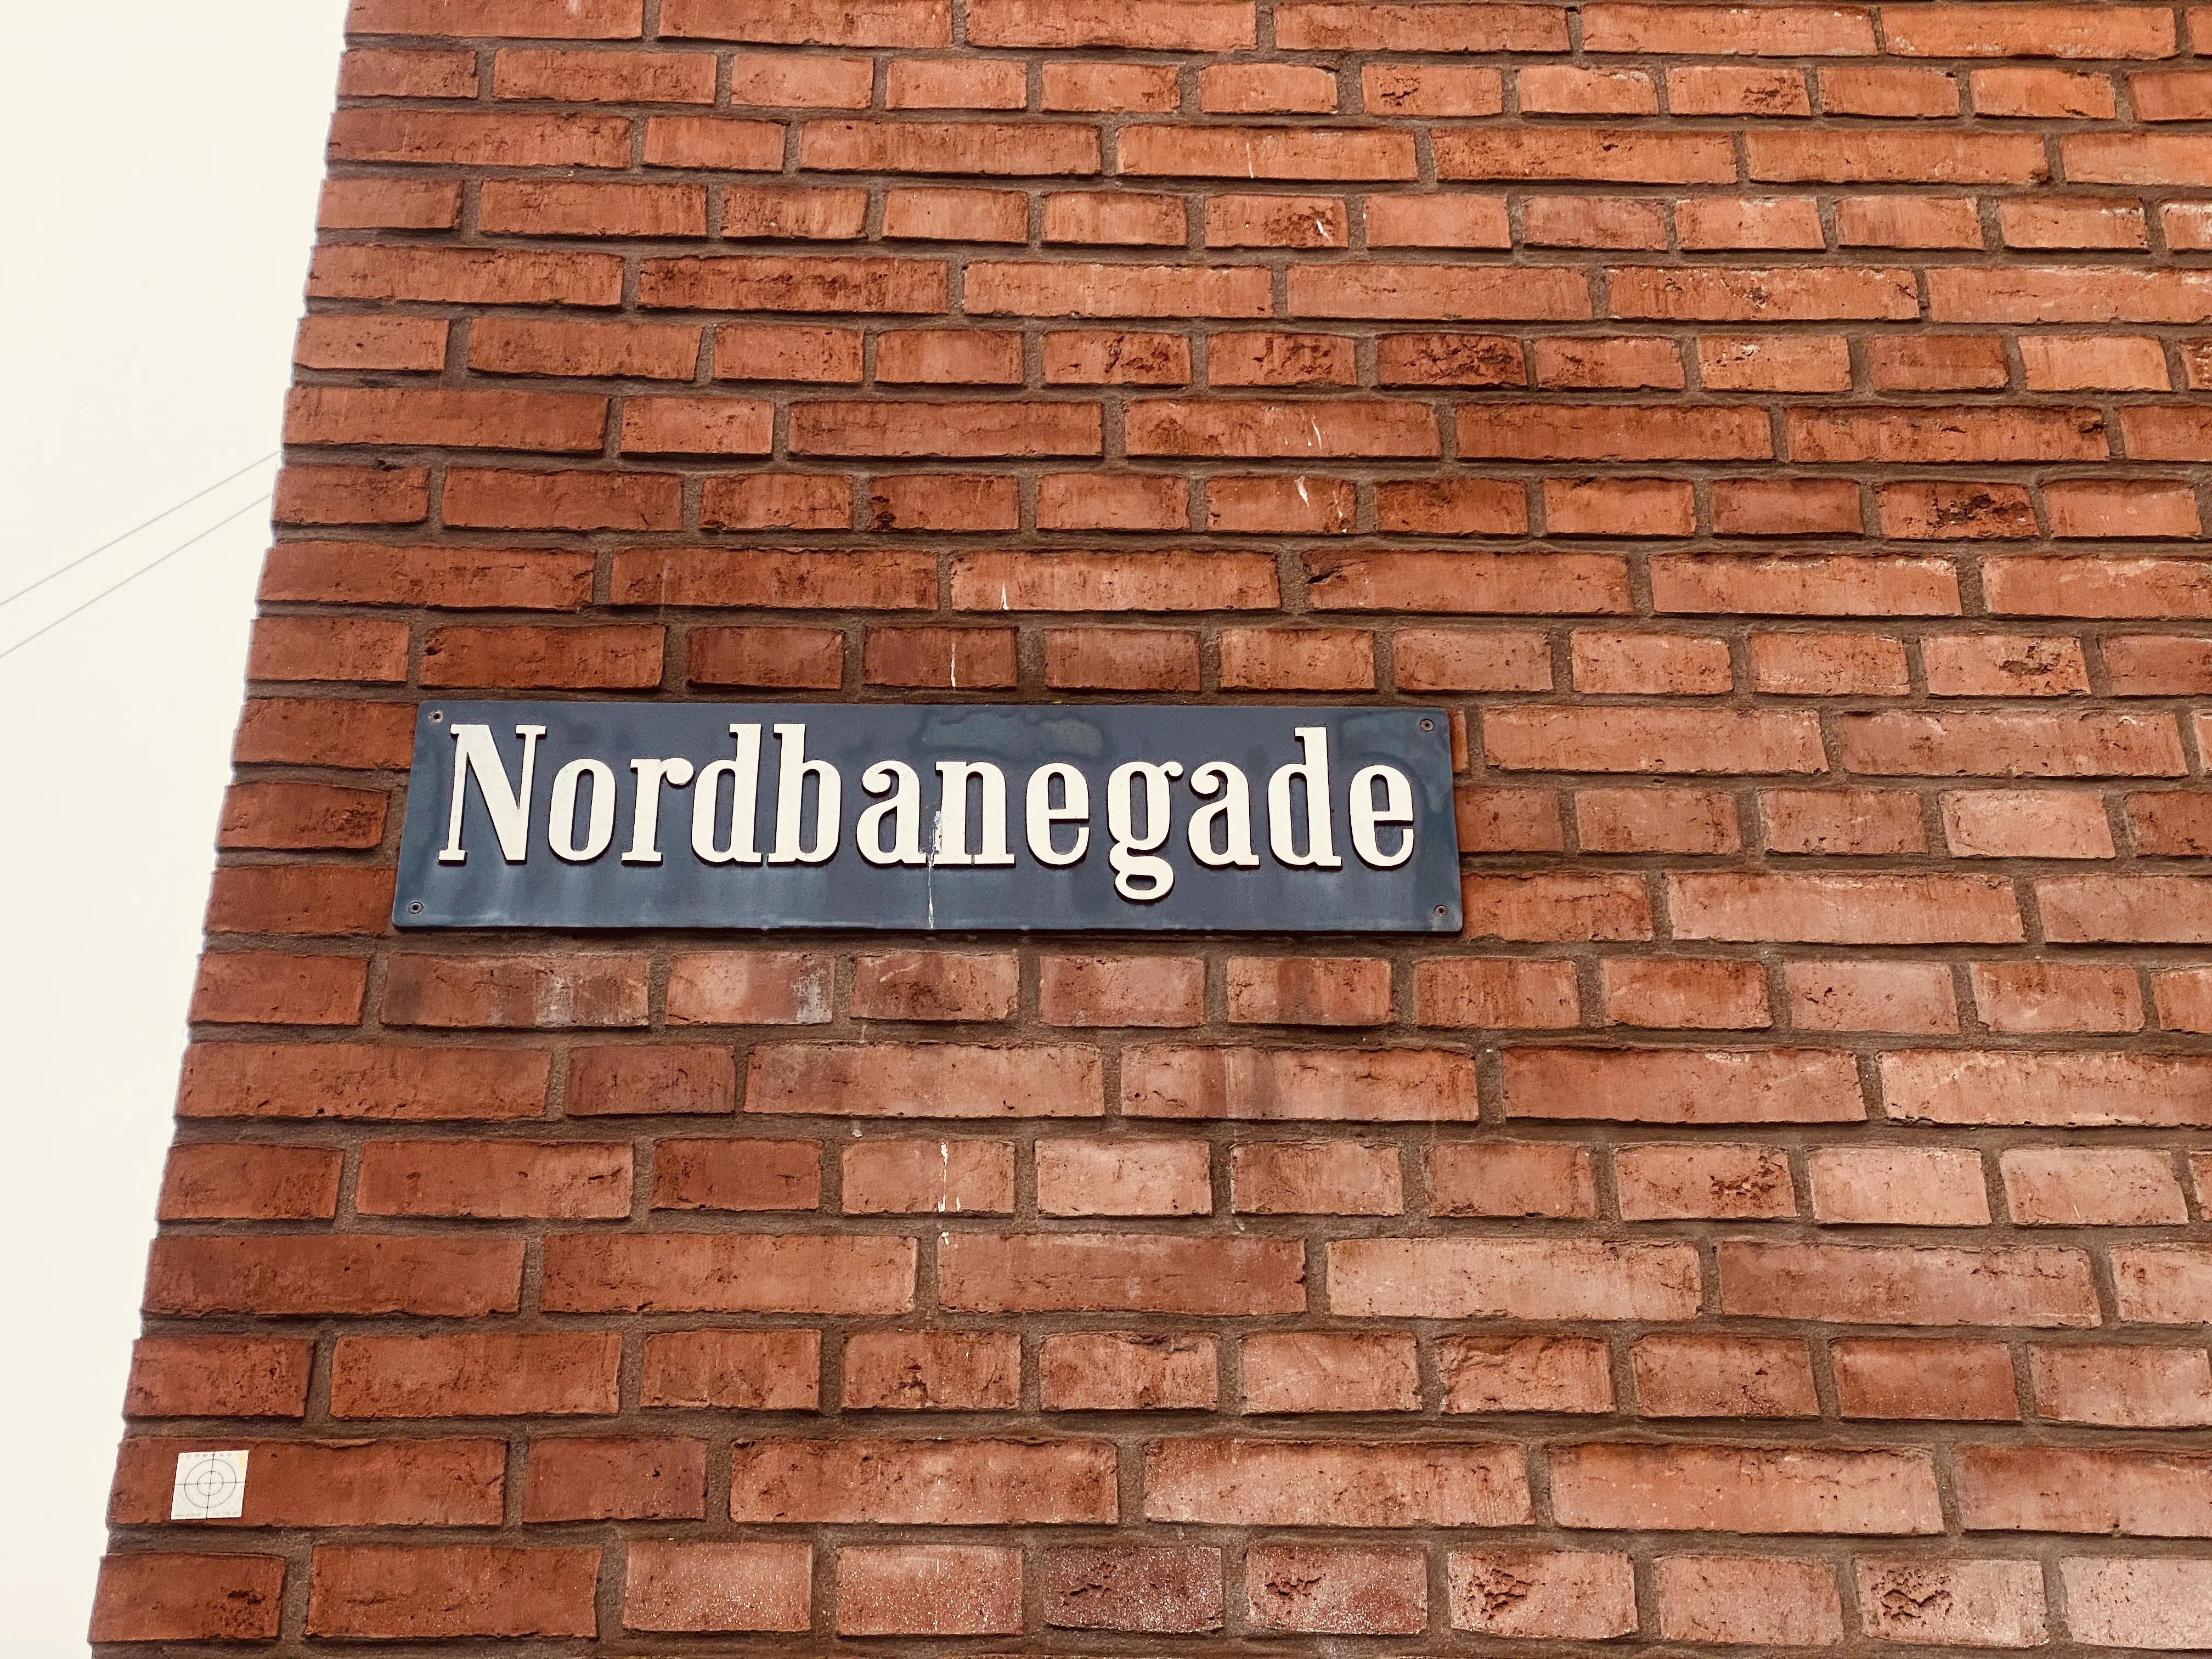 Billede af Nordbanegade, som er opkaldt efter Nordbanen, som gik igennem Nørrebro A Station.